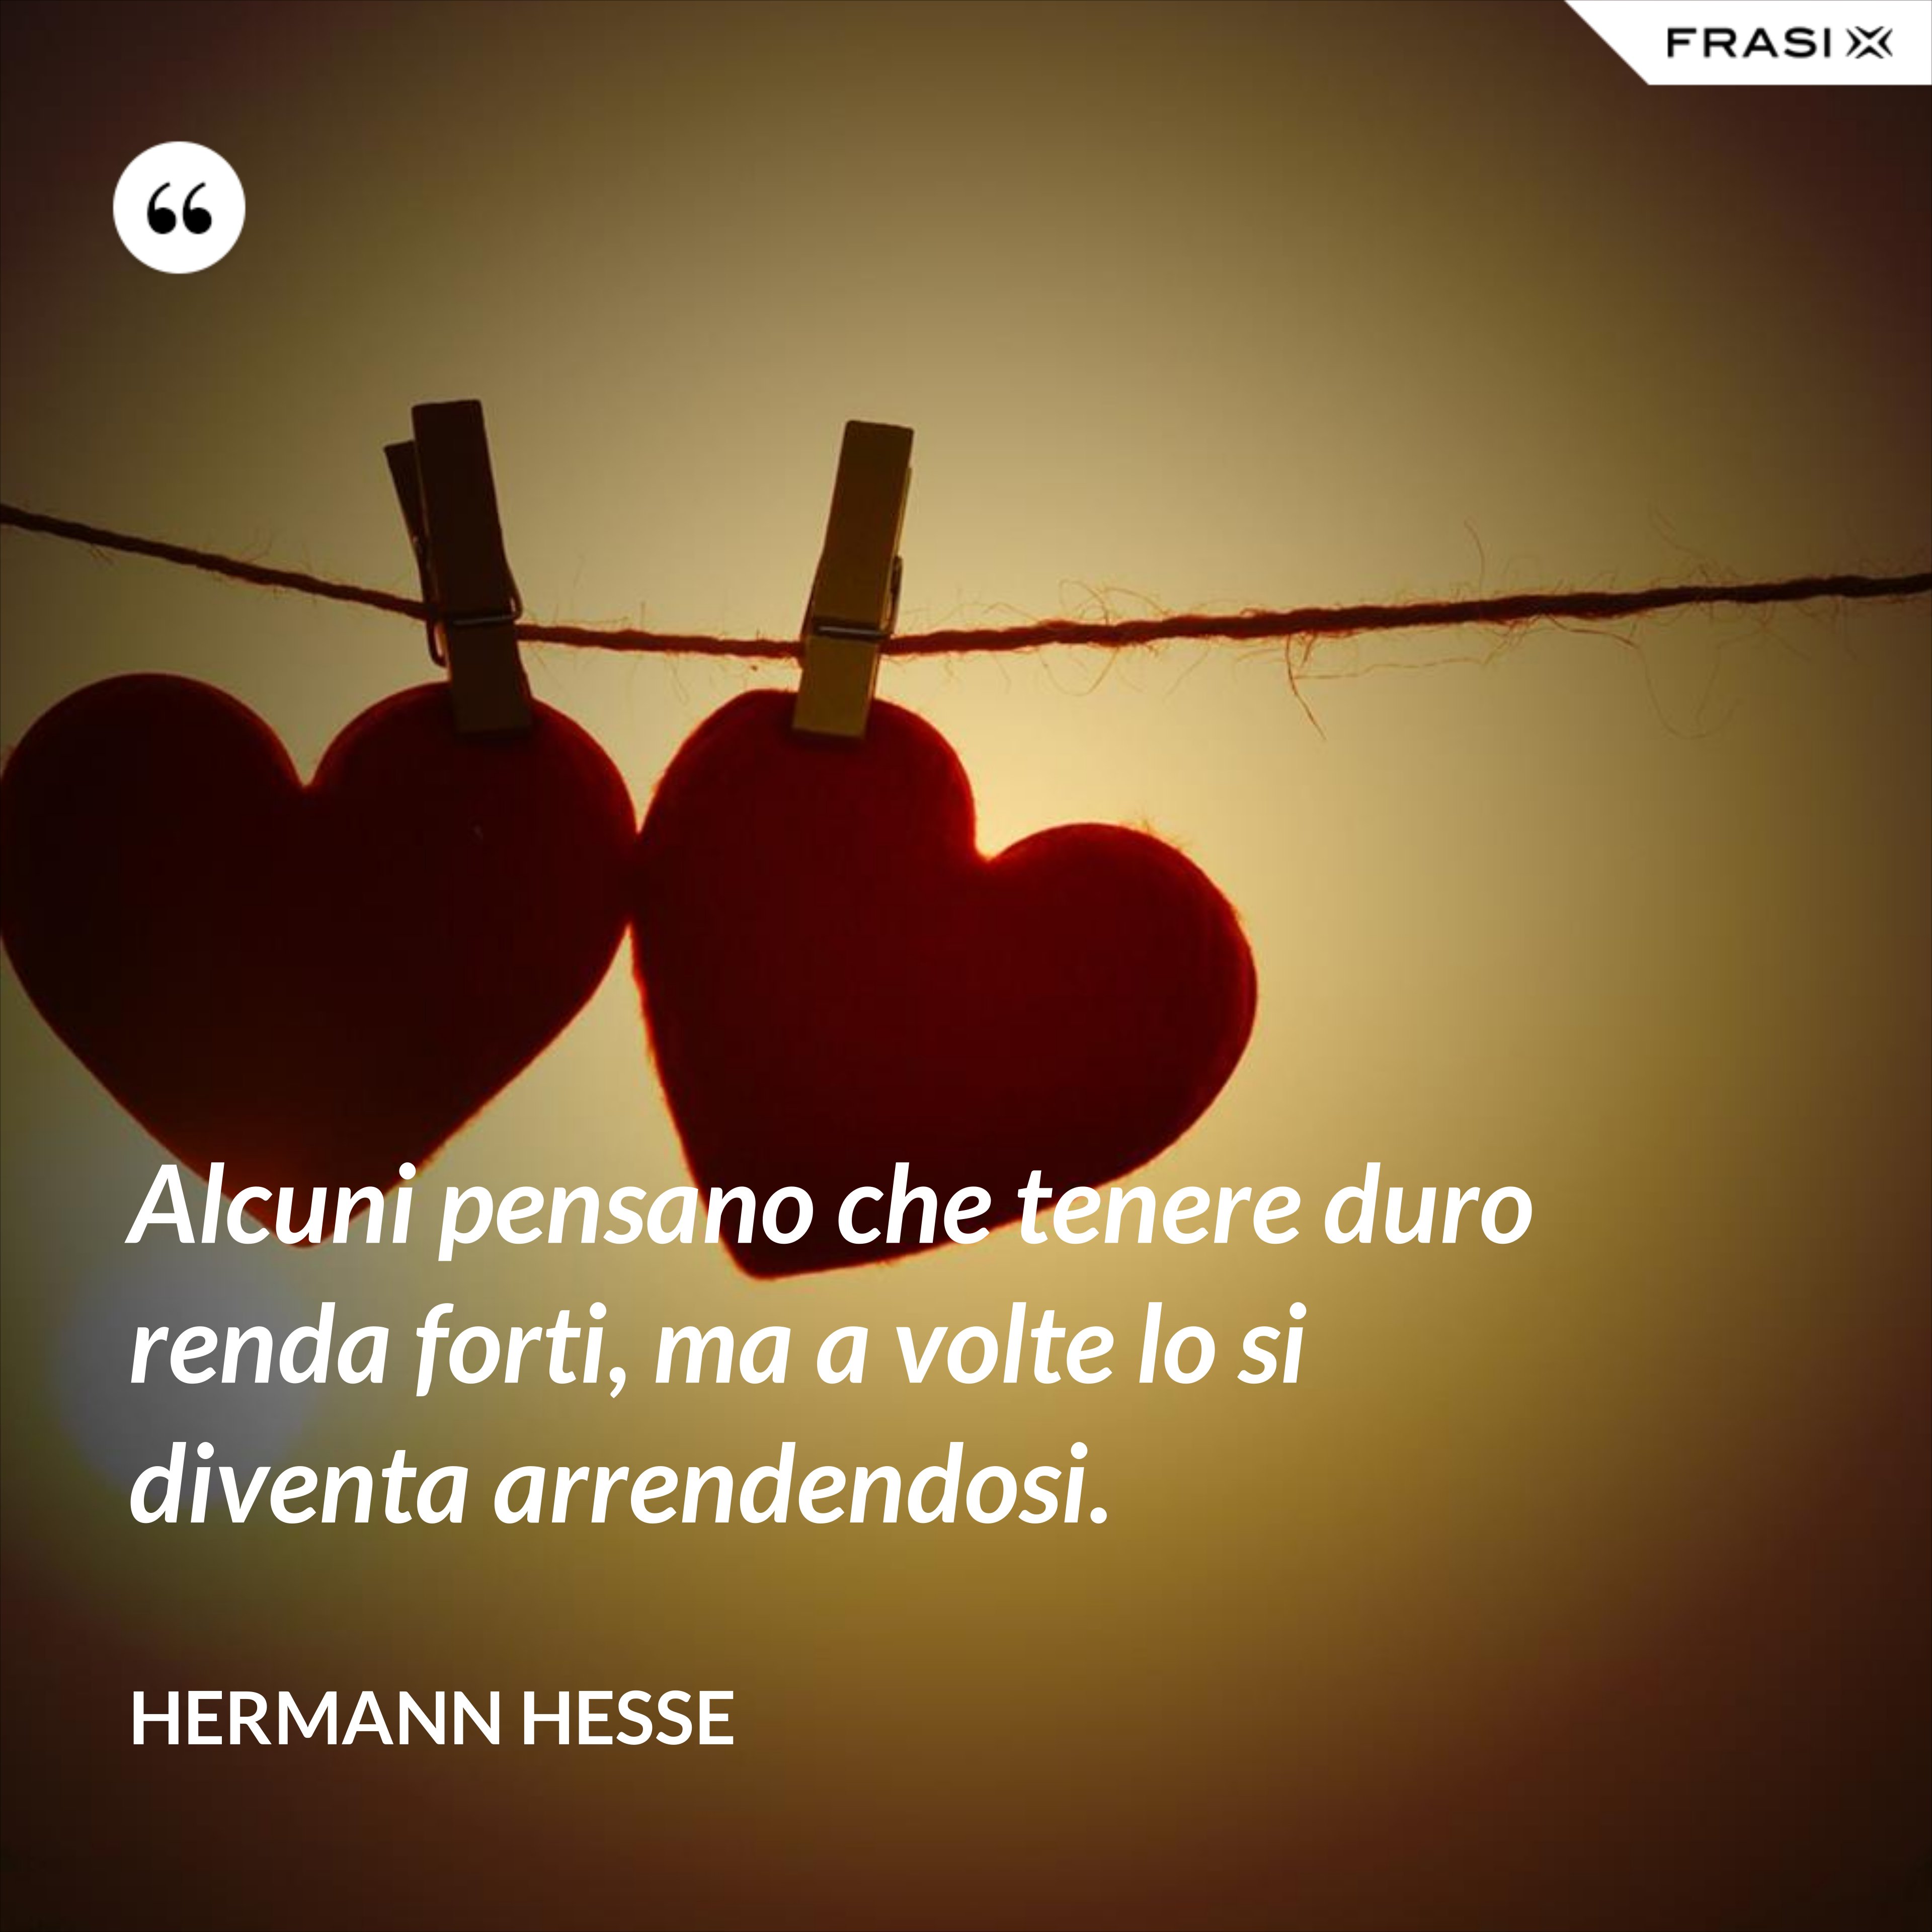 Alcuni pensano che tenere duro renda forti, ma a volte lo si diventa arrendendosi. - Hermann Hesse